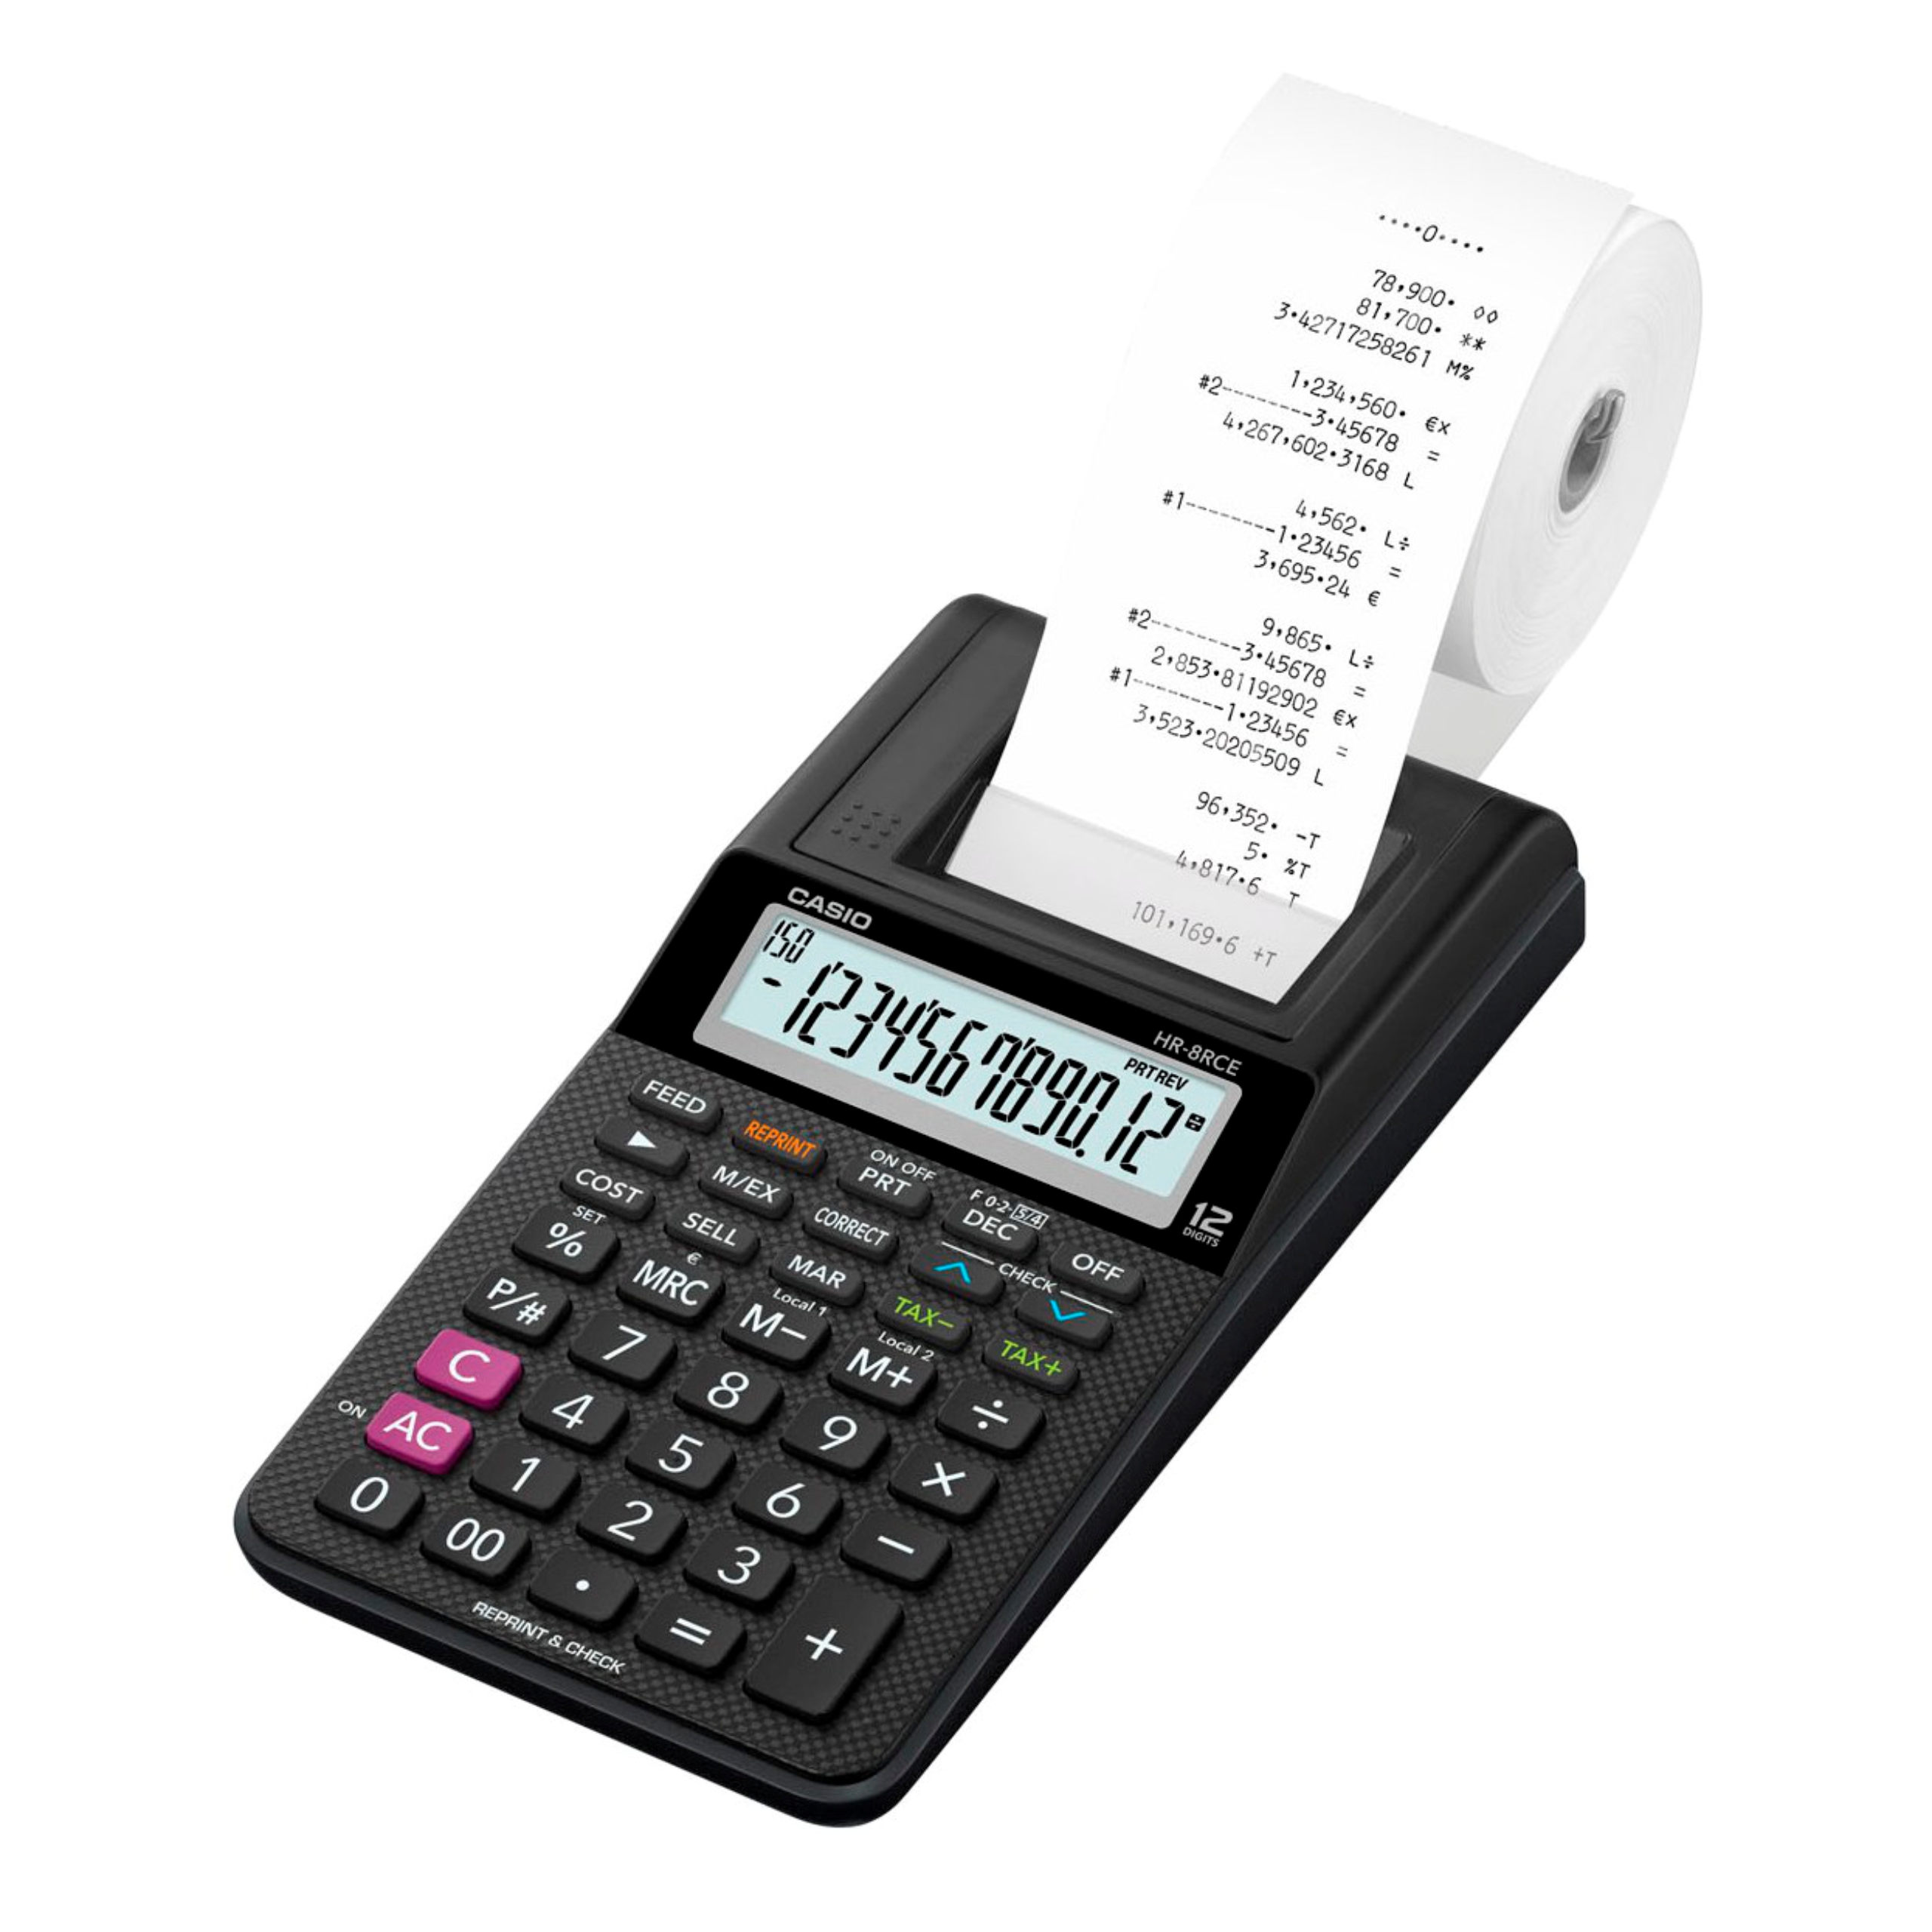 Kancelárska kalkulačka Casio HR-8RCE